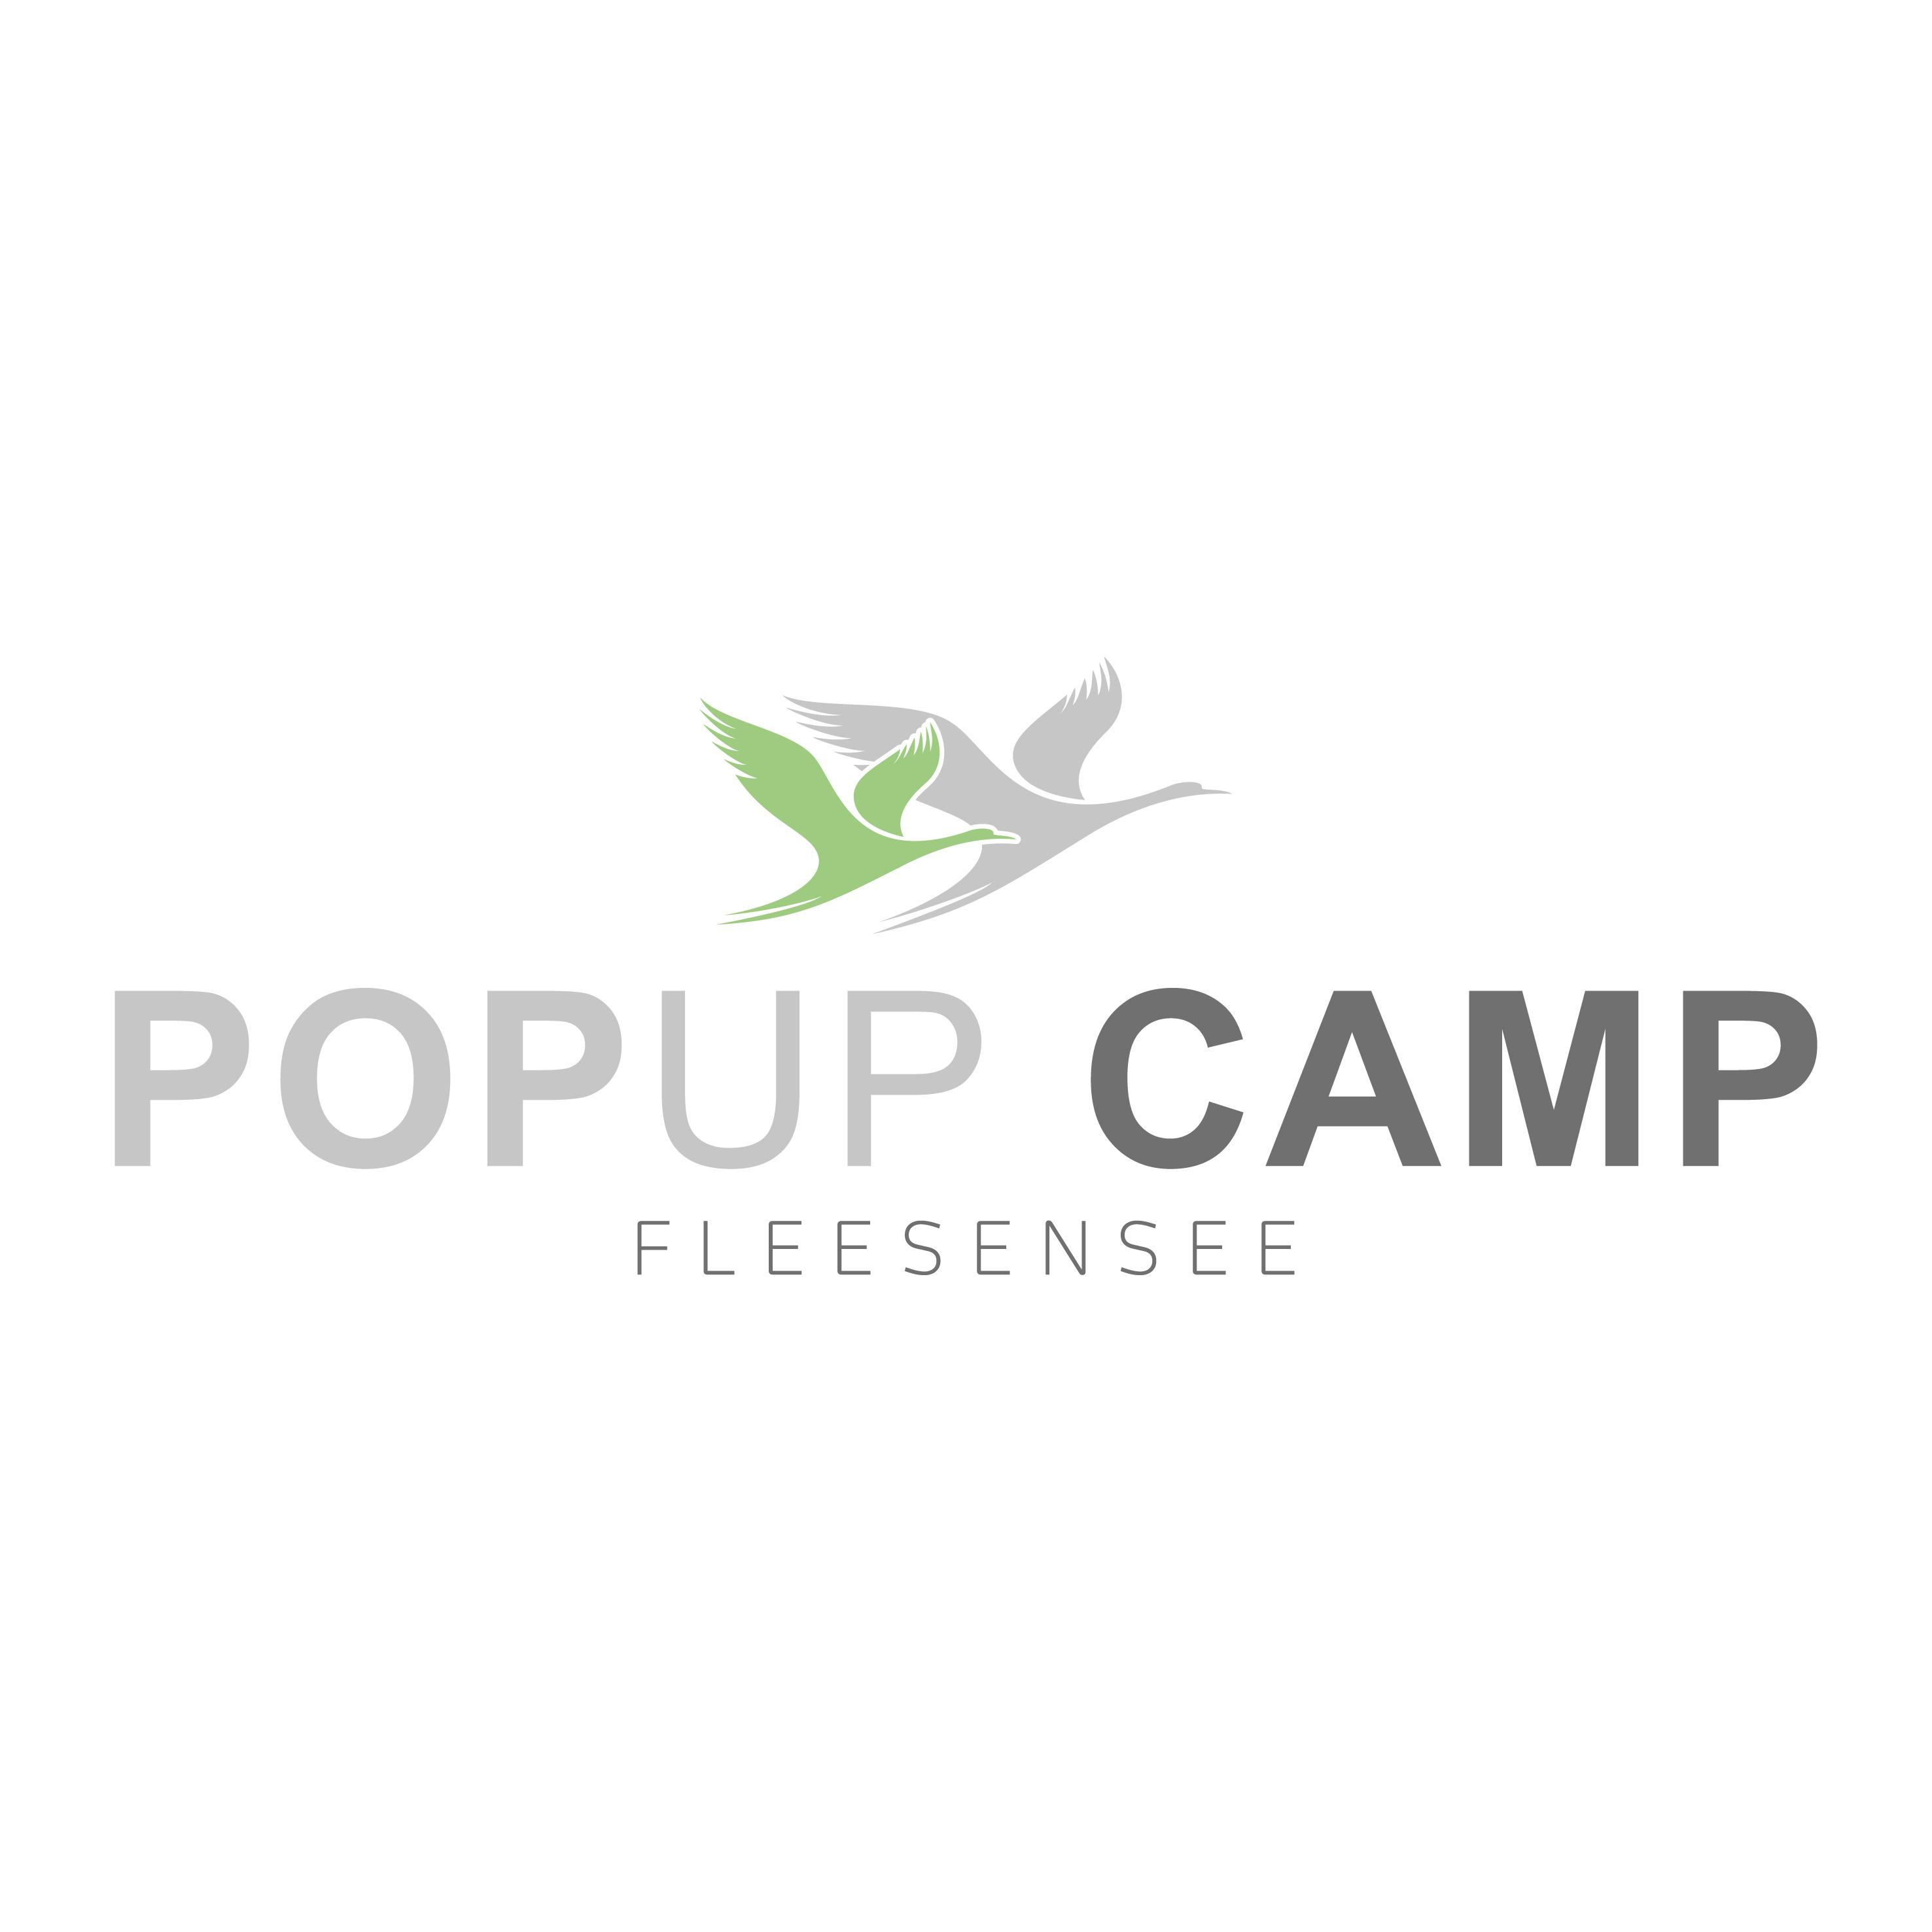 PopUp Camp Fleesensee in Göhren Lebbin - Logo